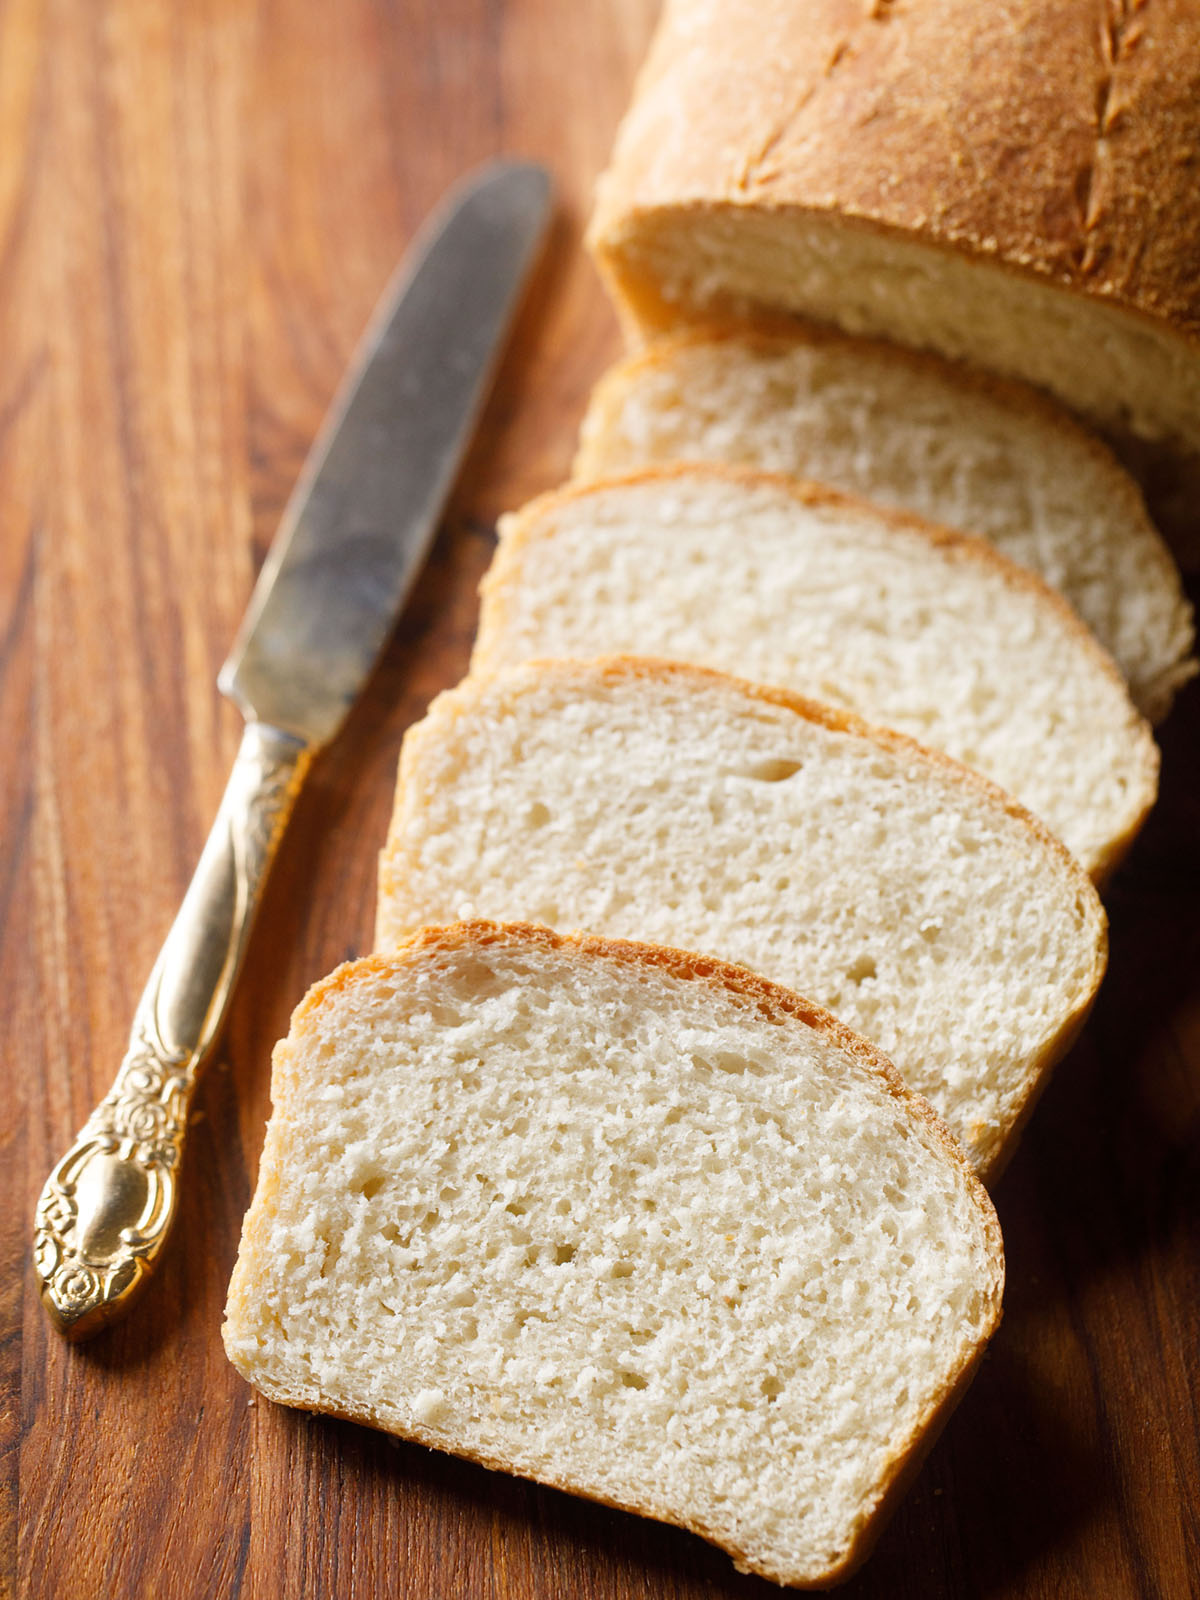 Learn the joy of bread making